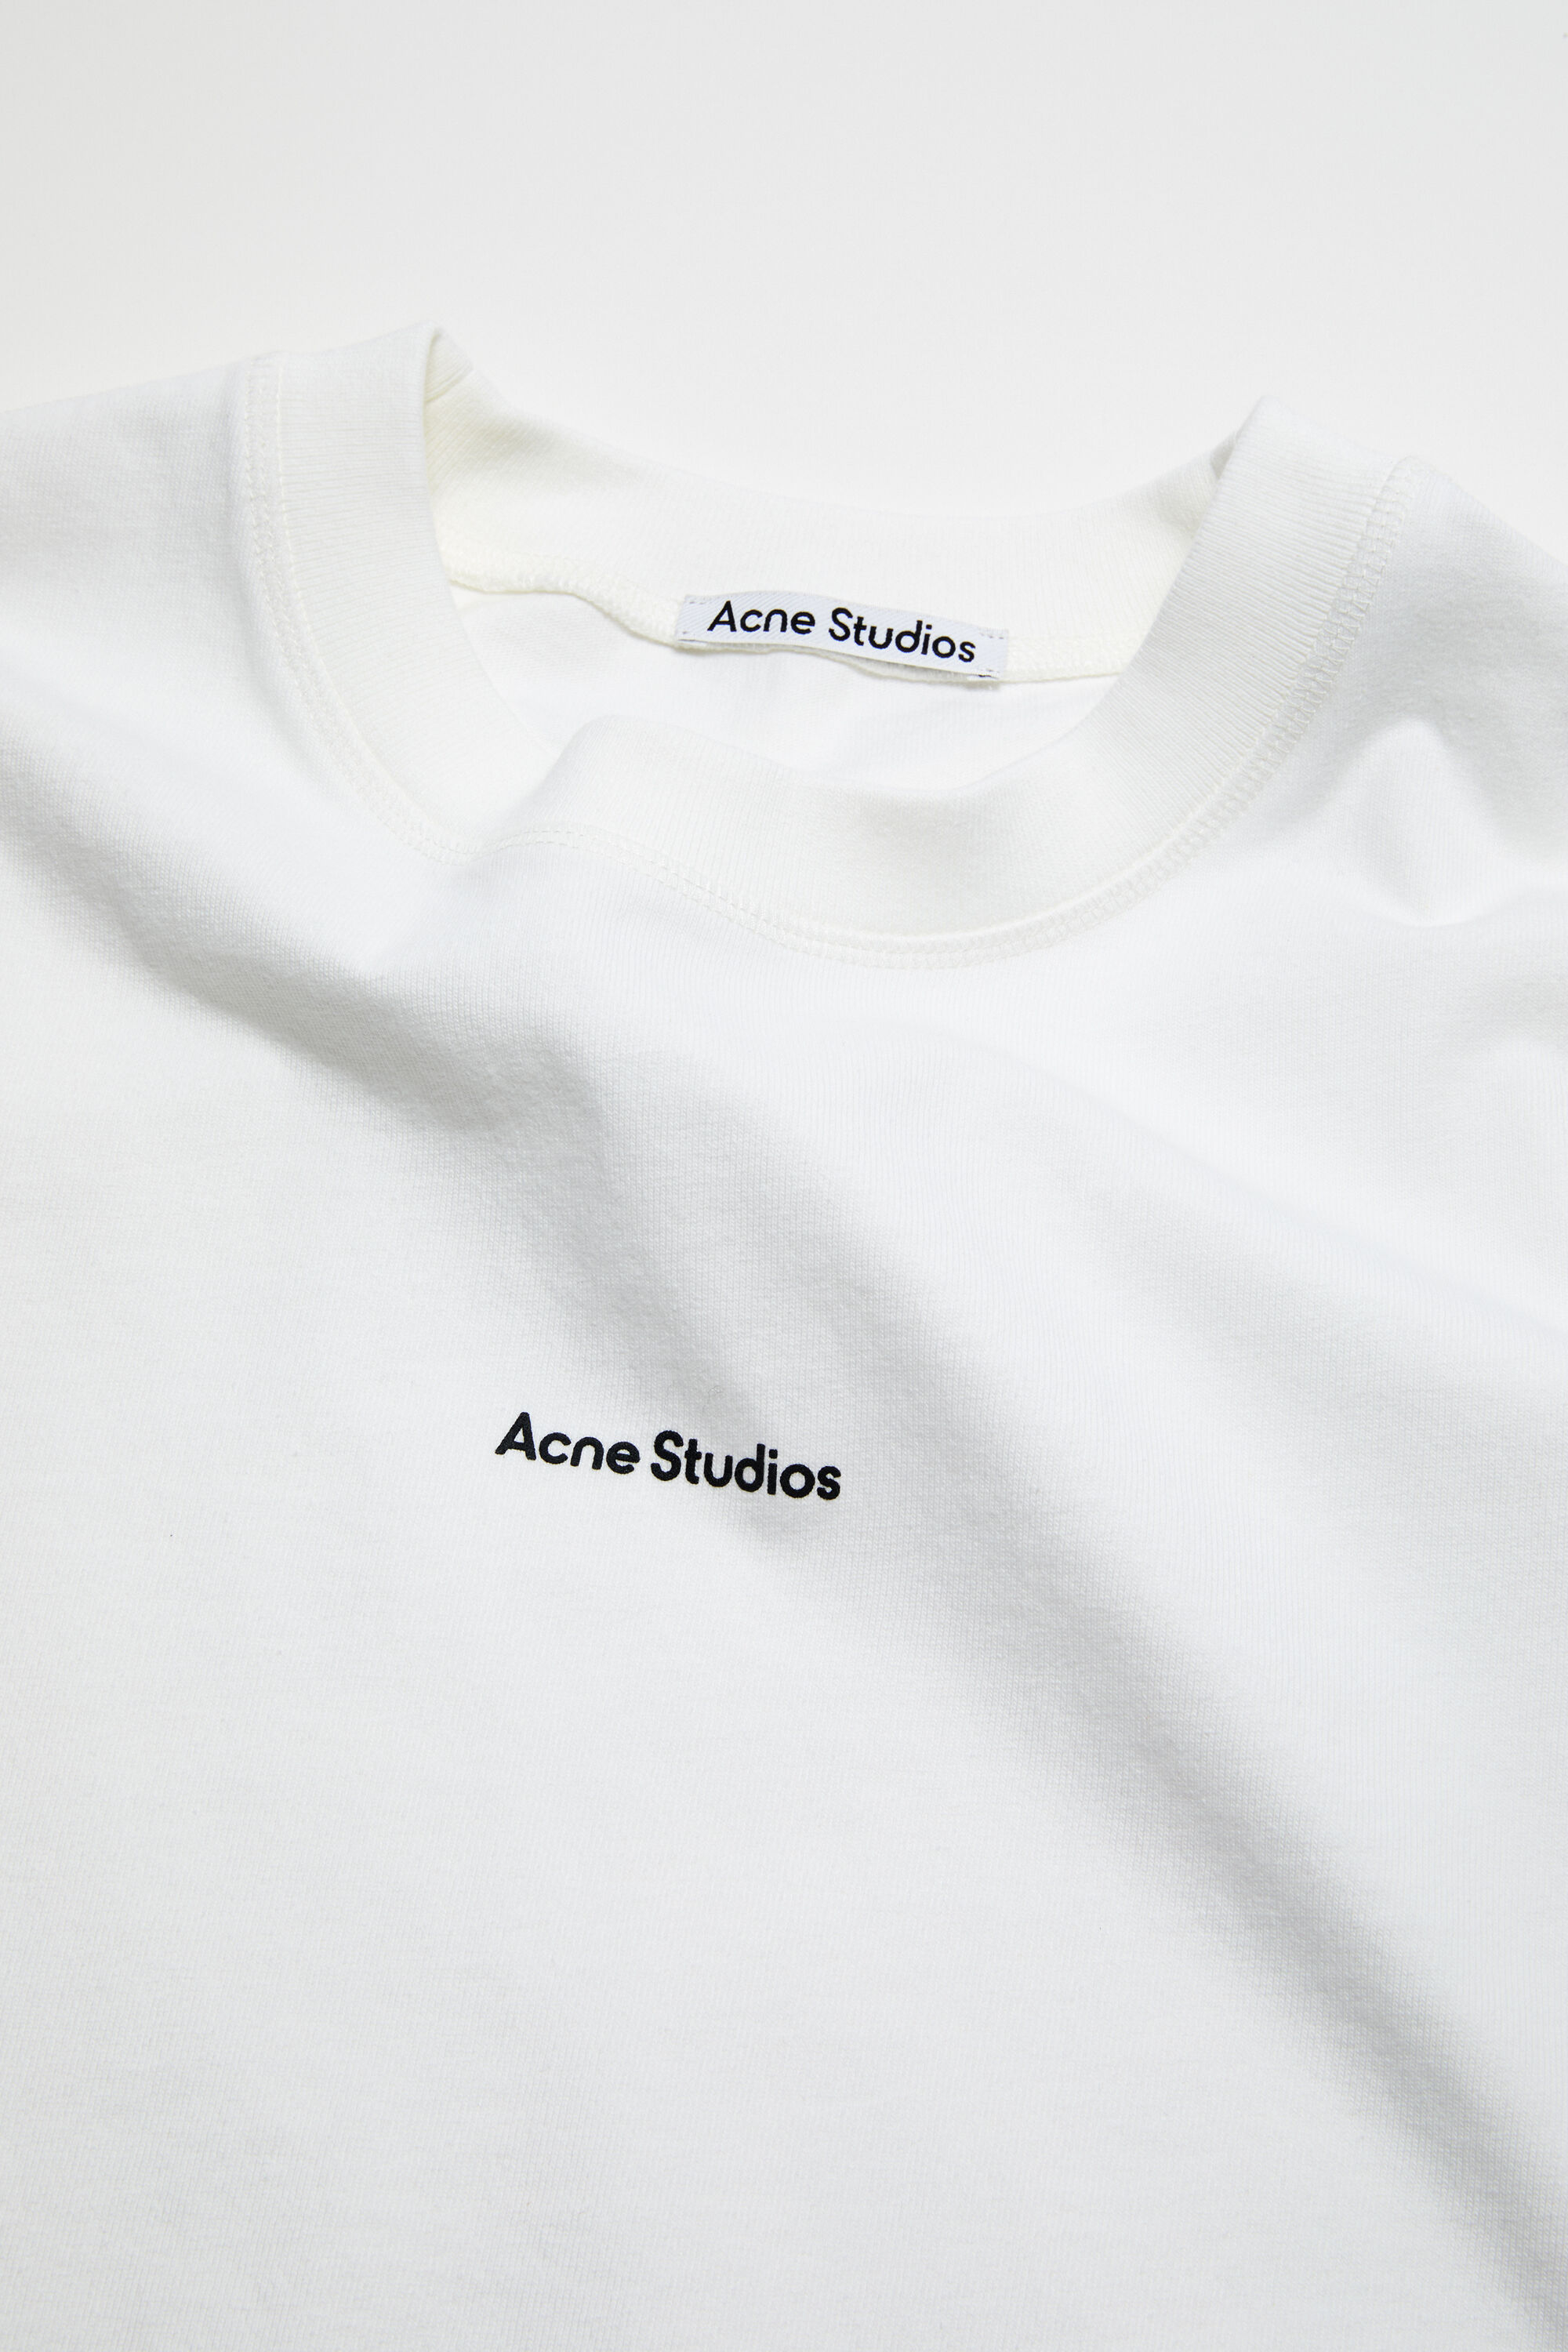 Acne Studios - ロゴTシャツ - オプティックホワイト